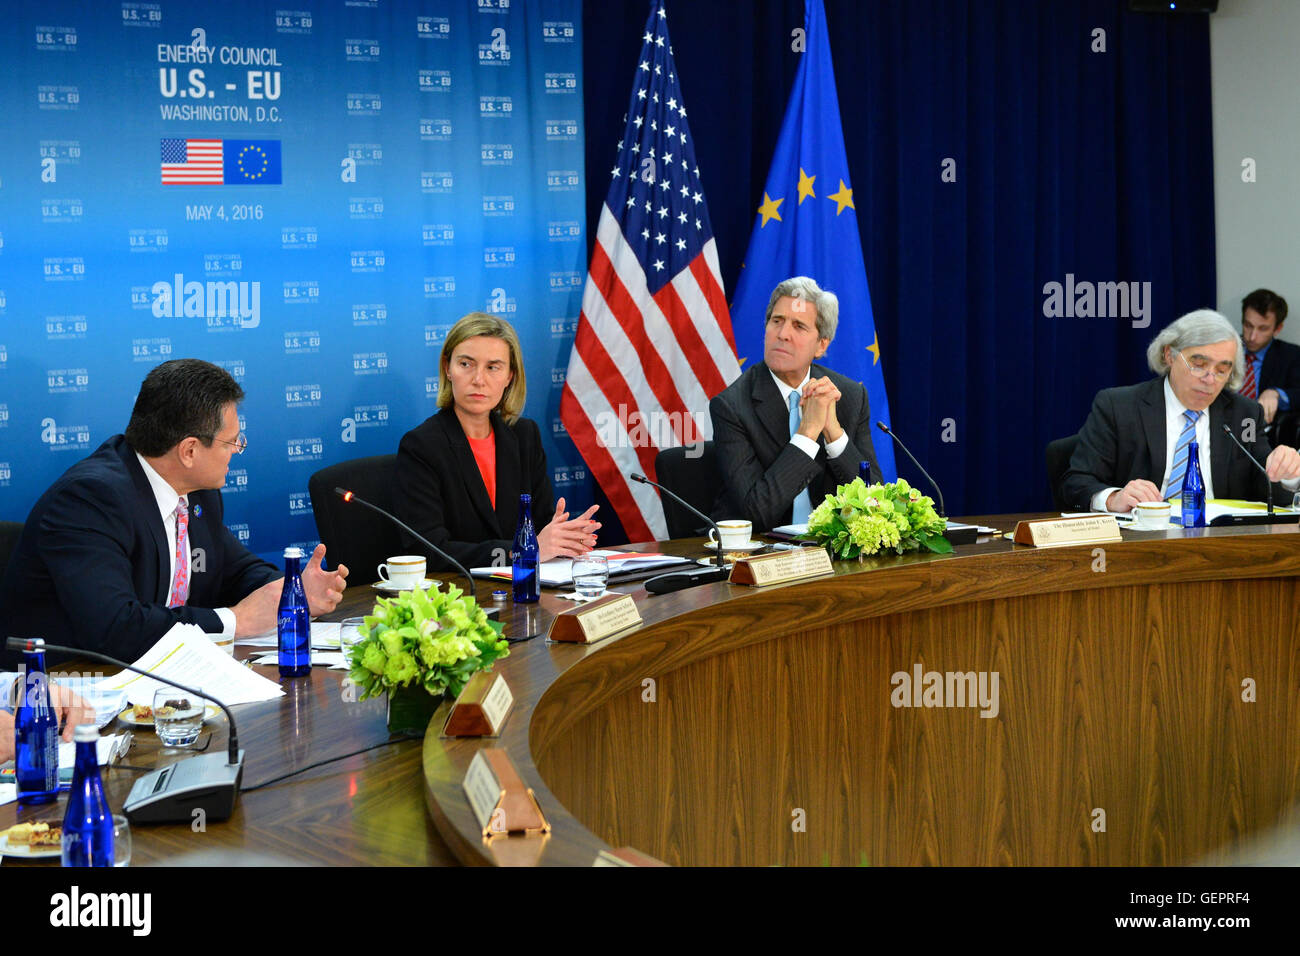 Vice-président de l'UE pour l'énergie Union européenne Šefčovič aborde le septième Conseil de l'Énergie des États-Unis-UE tenue à Washington Banque D'Images